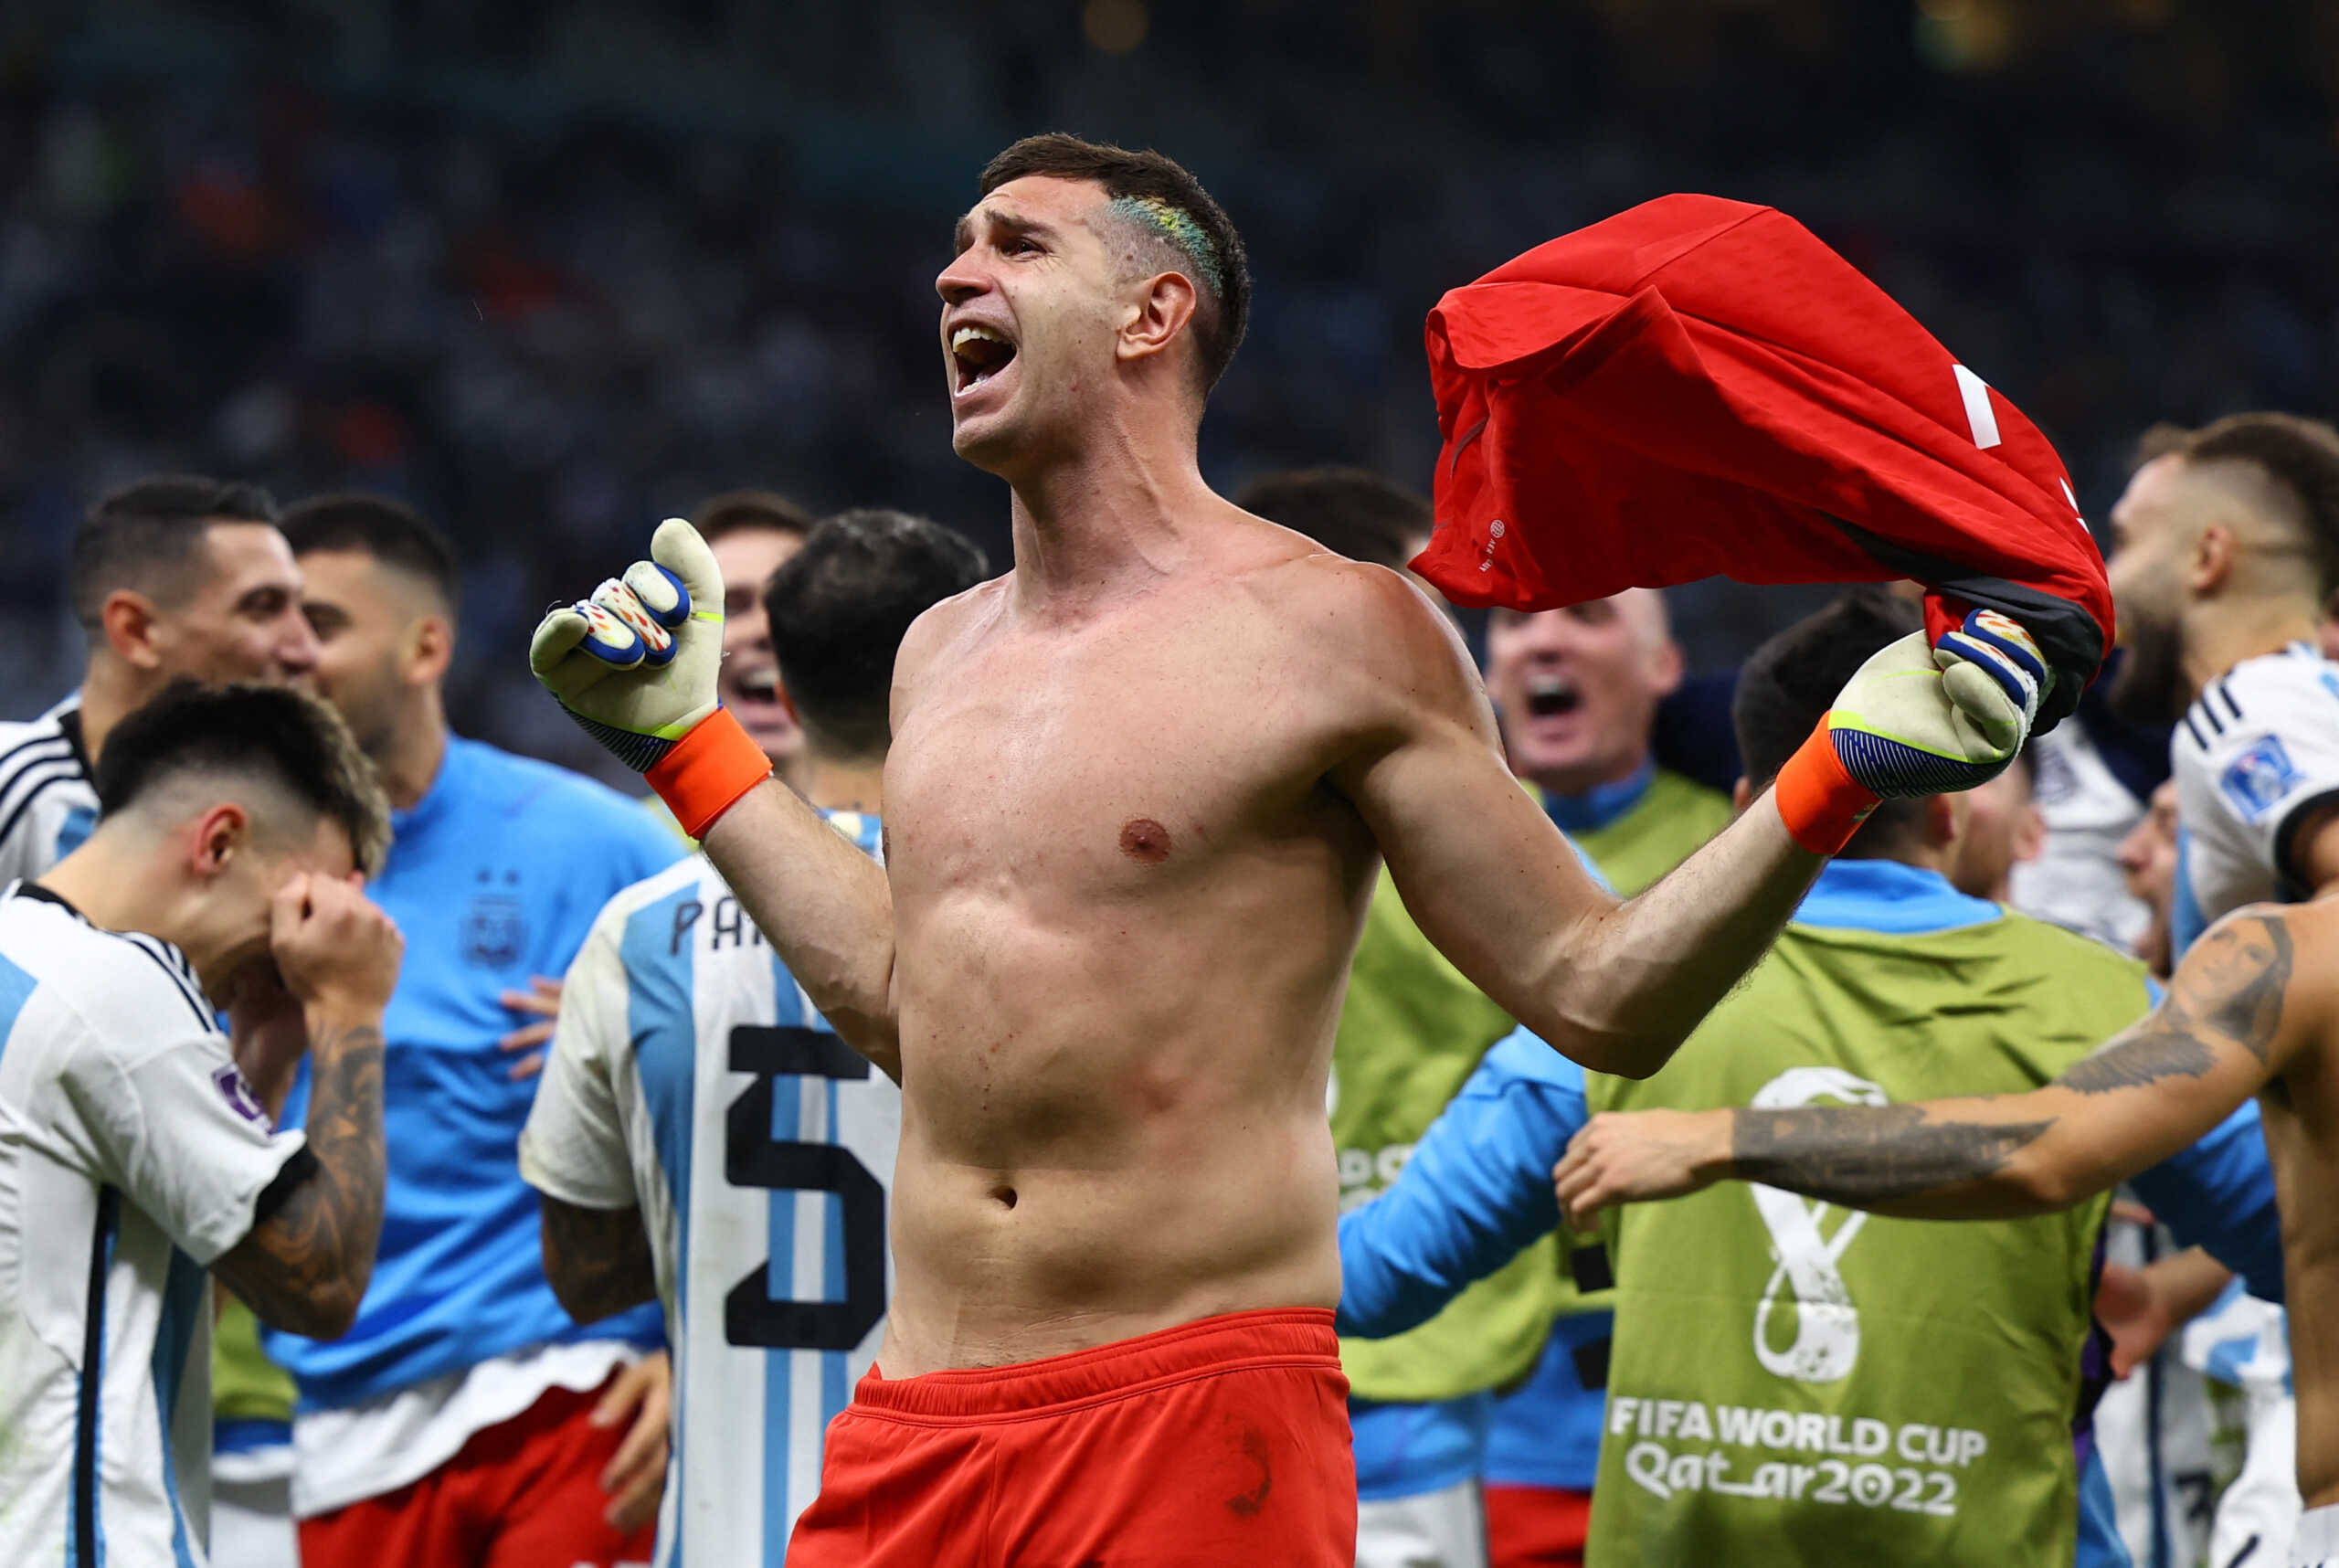 Μουντιάλ 2022: Ο Αργεντινός τερματοφύλακας Εμιλιάνο Μαρτίνες ξέσπασε στον ολλανδικό πάγκο – «Σε γ@μησ@ δύο φορές»